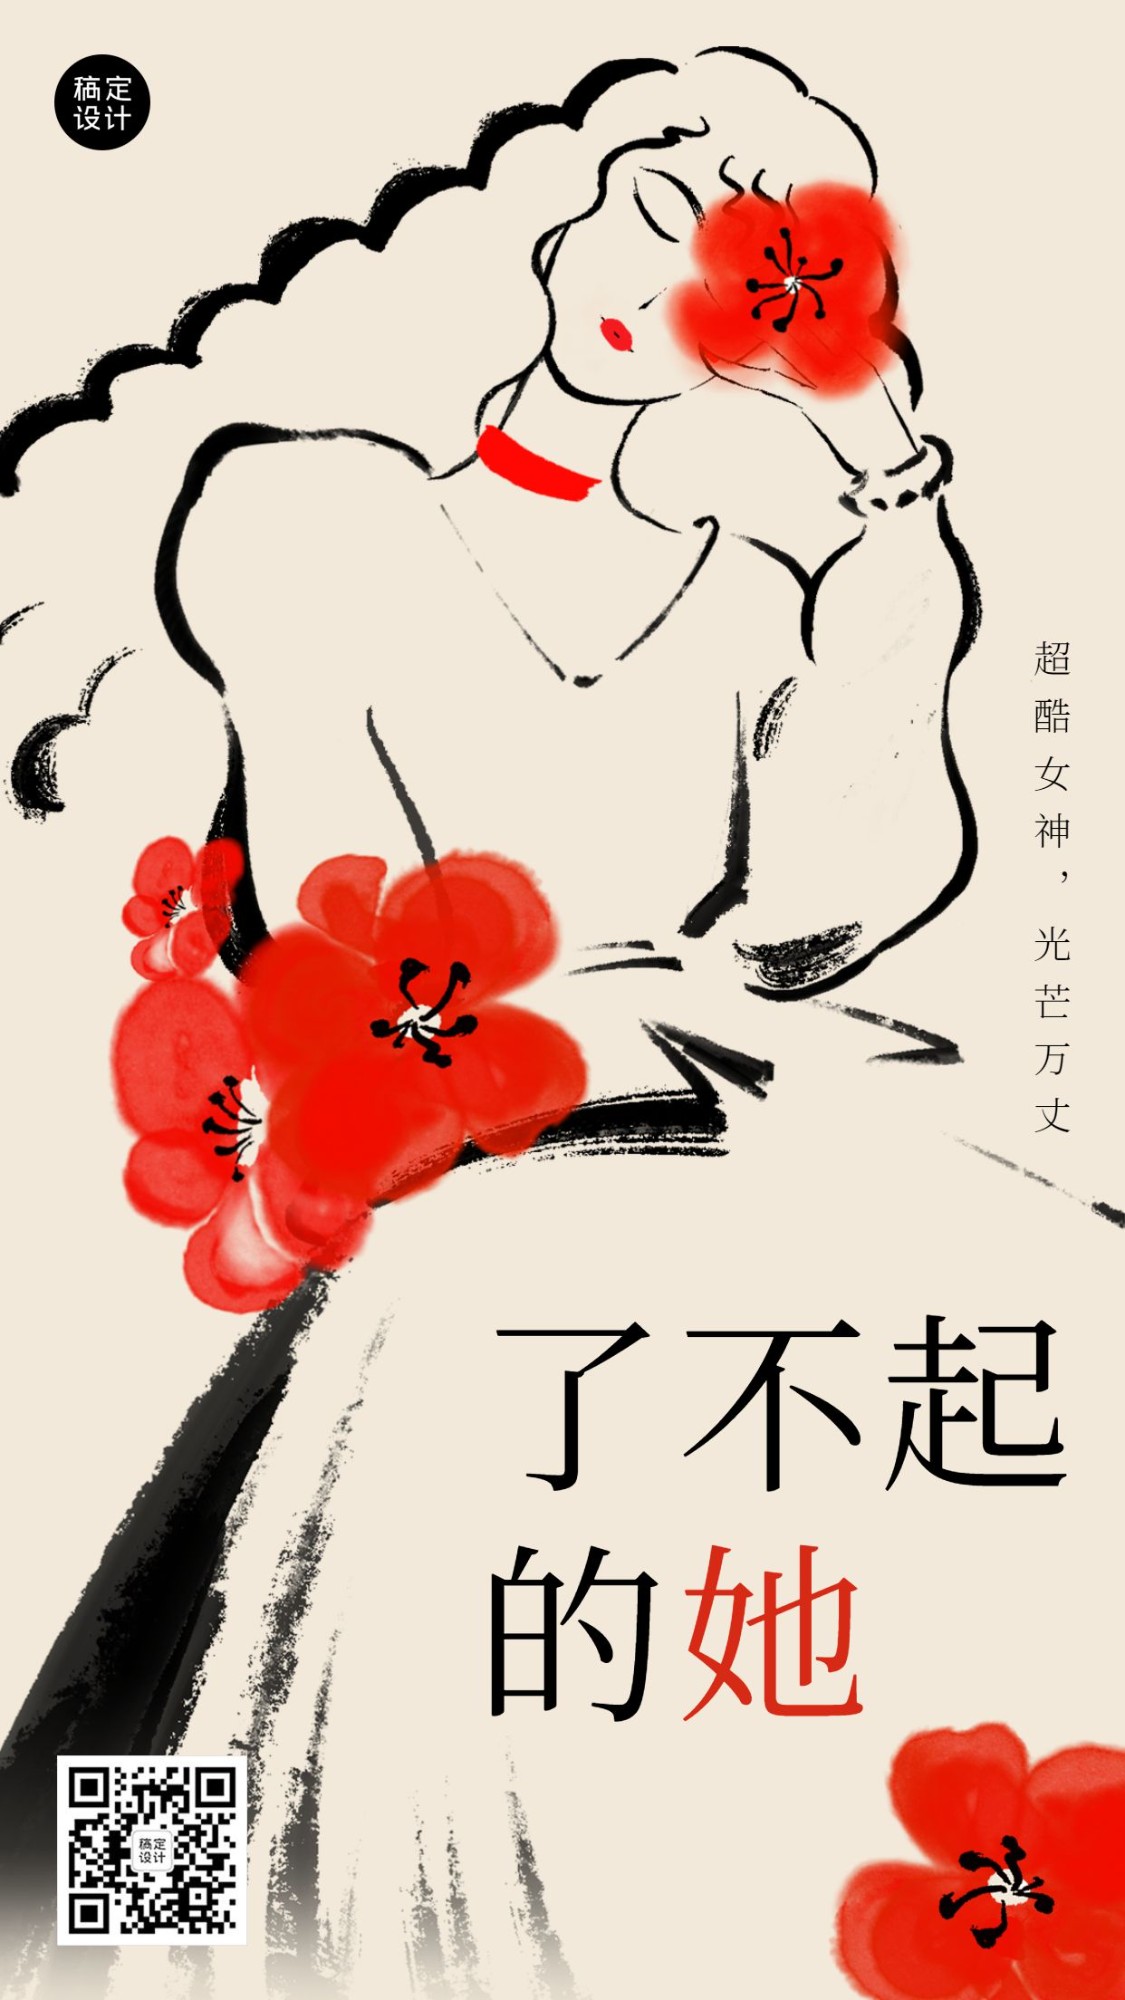 妇女节节日祝福干油墨插画手机海报